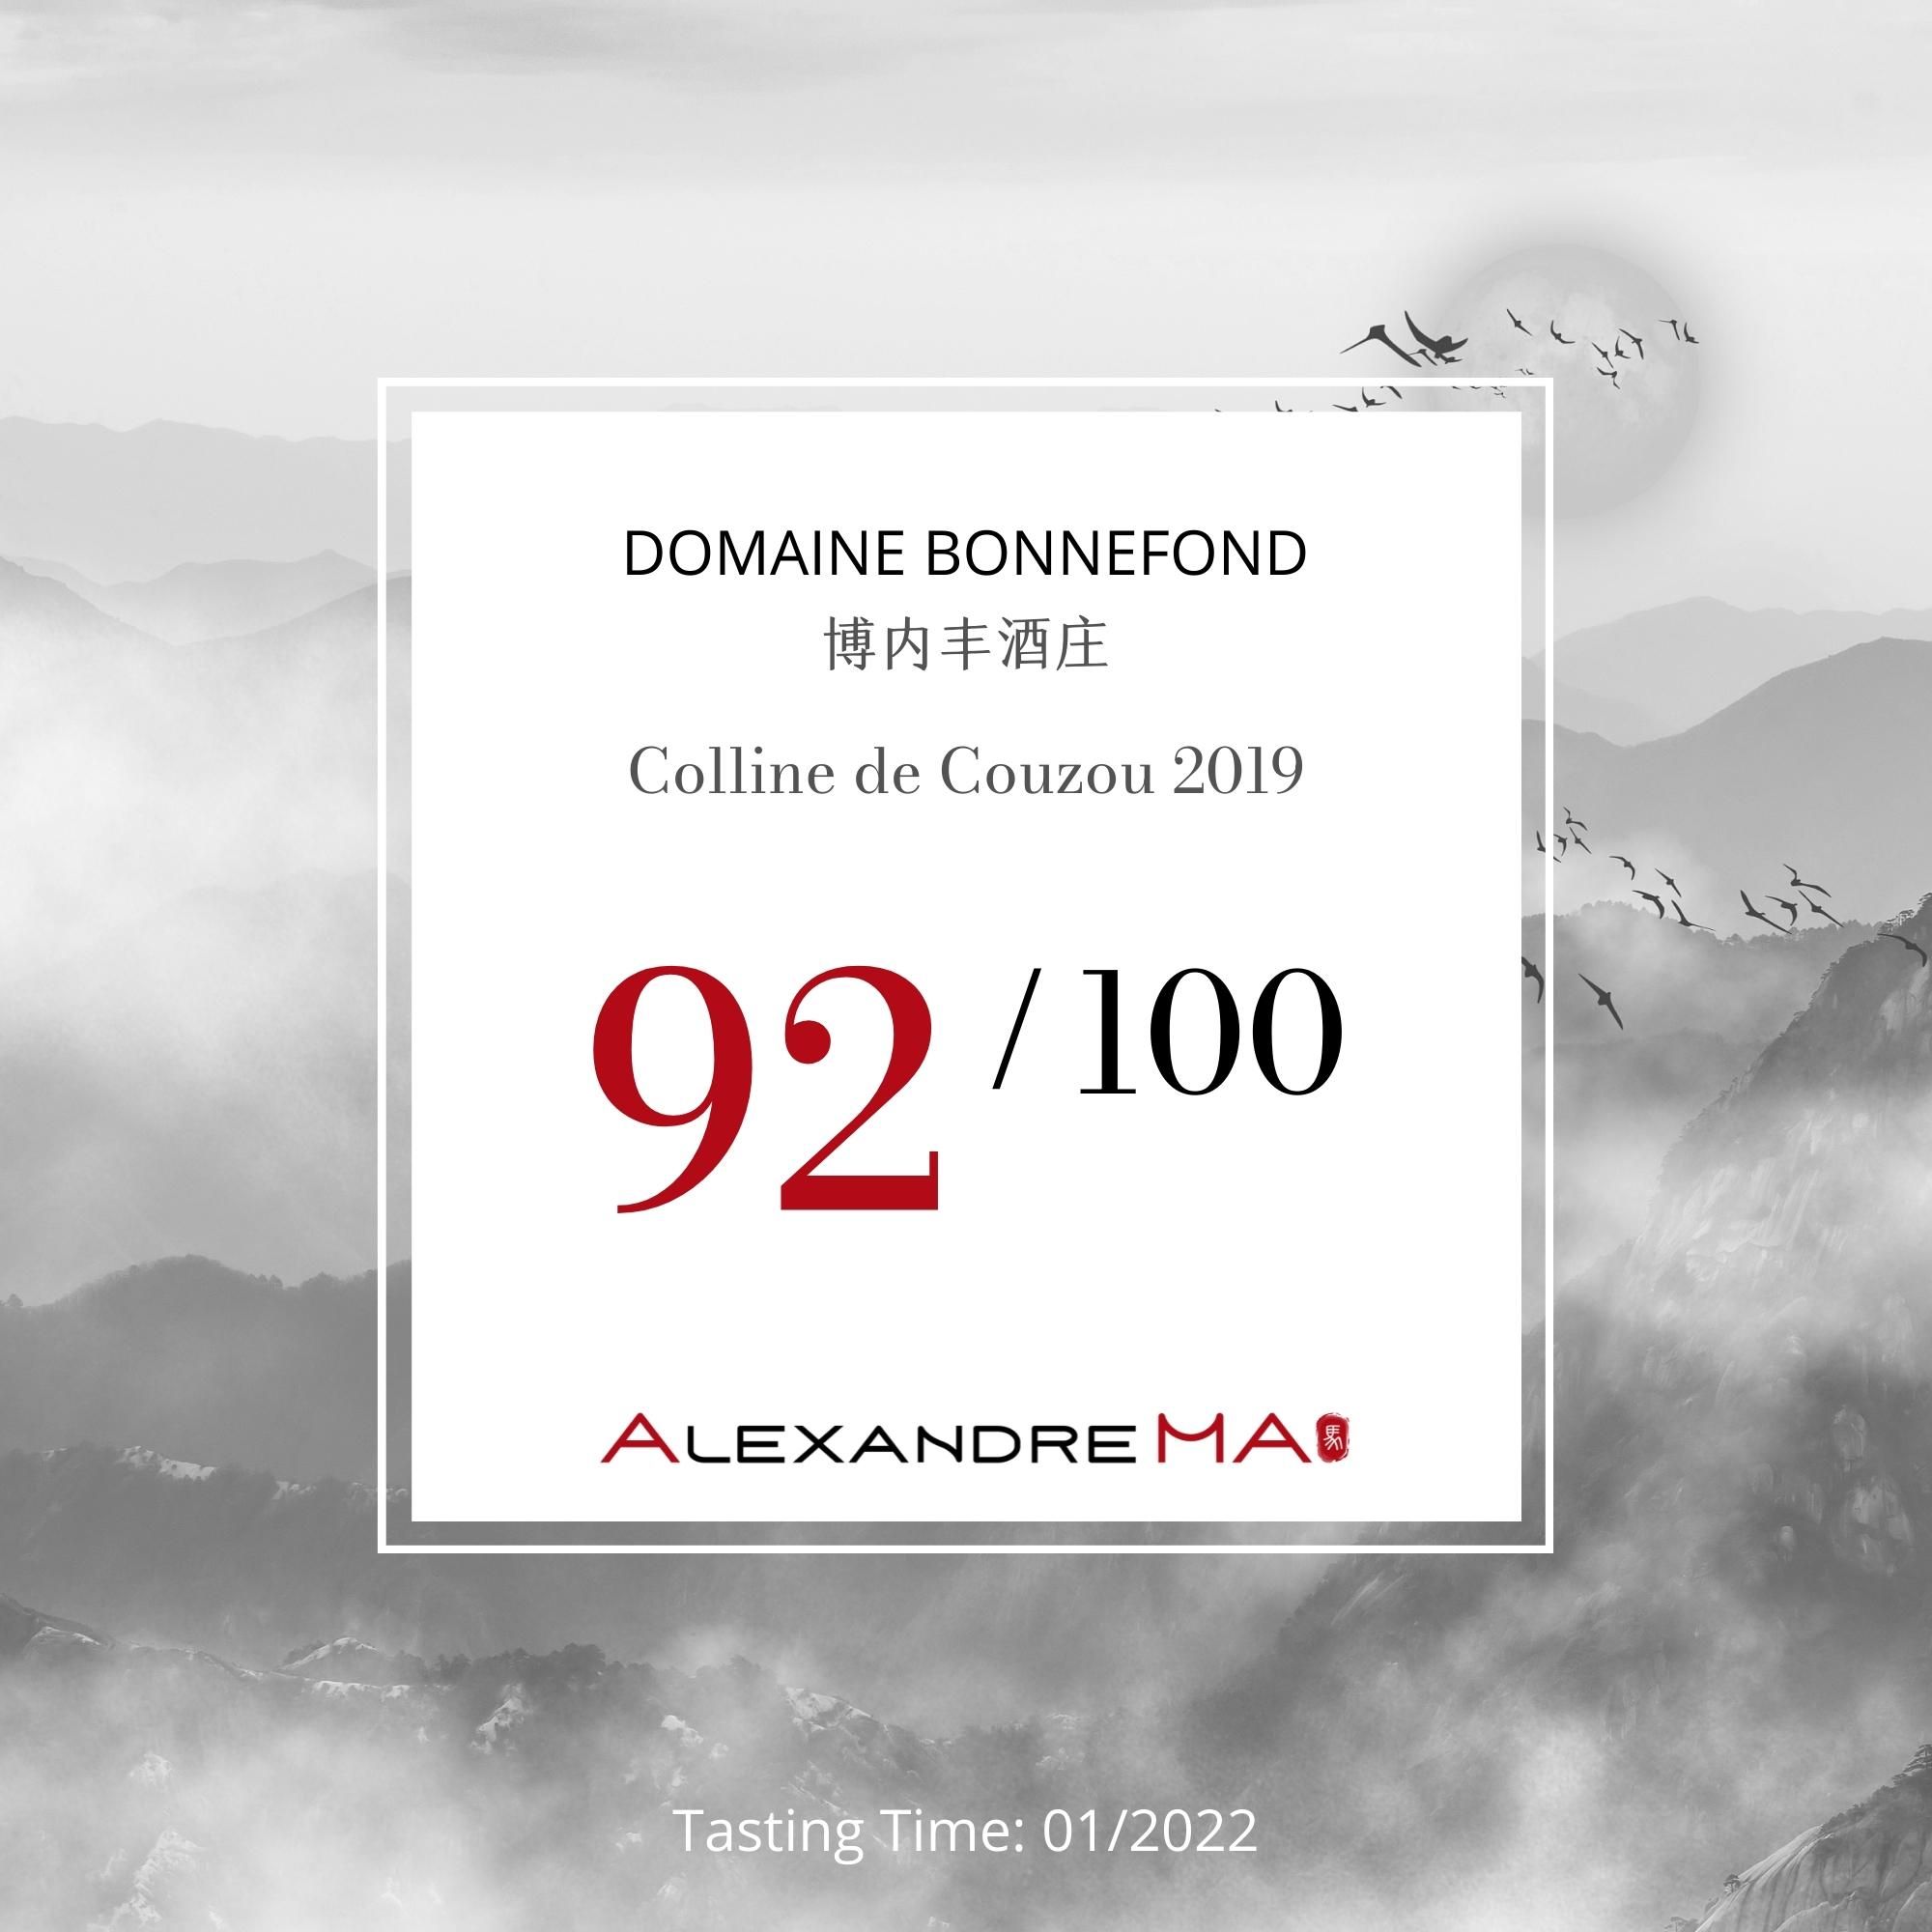 Domaine Bonnefond (Patrick et Christophe) – Colline de Couzou 2019 - Alexandre MA